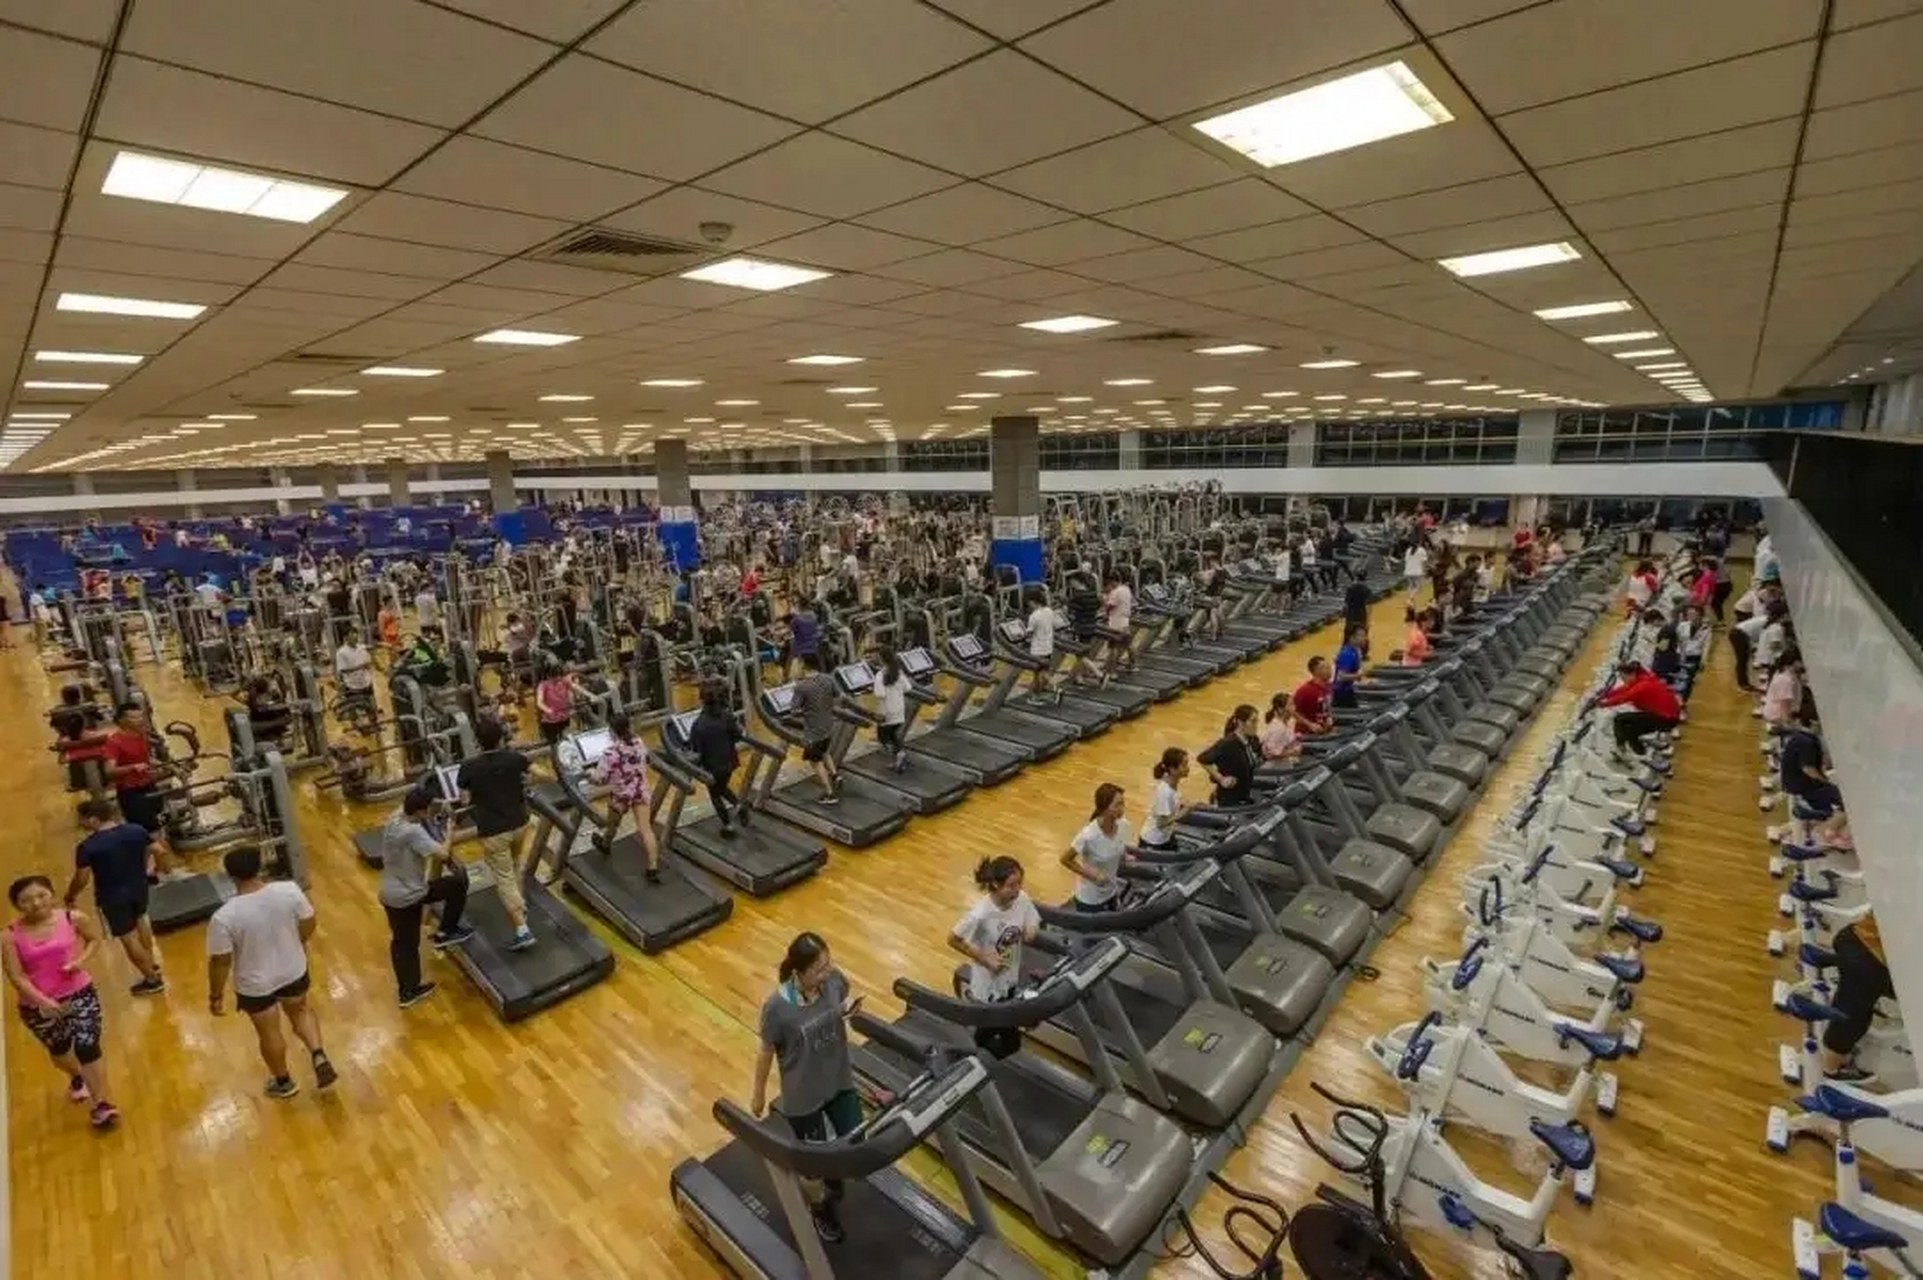 近日网上纷纷报道北京体育大学夜晚的健身房走红这真是太健康了,小